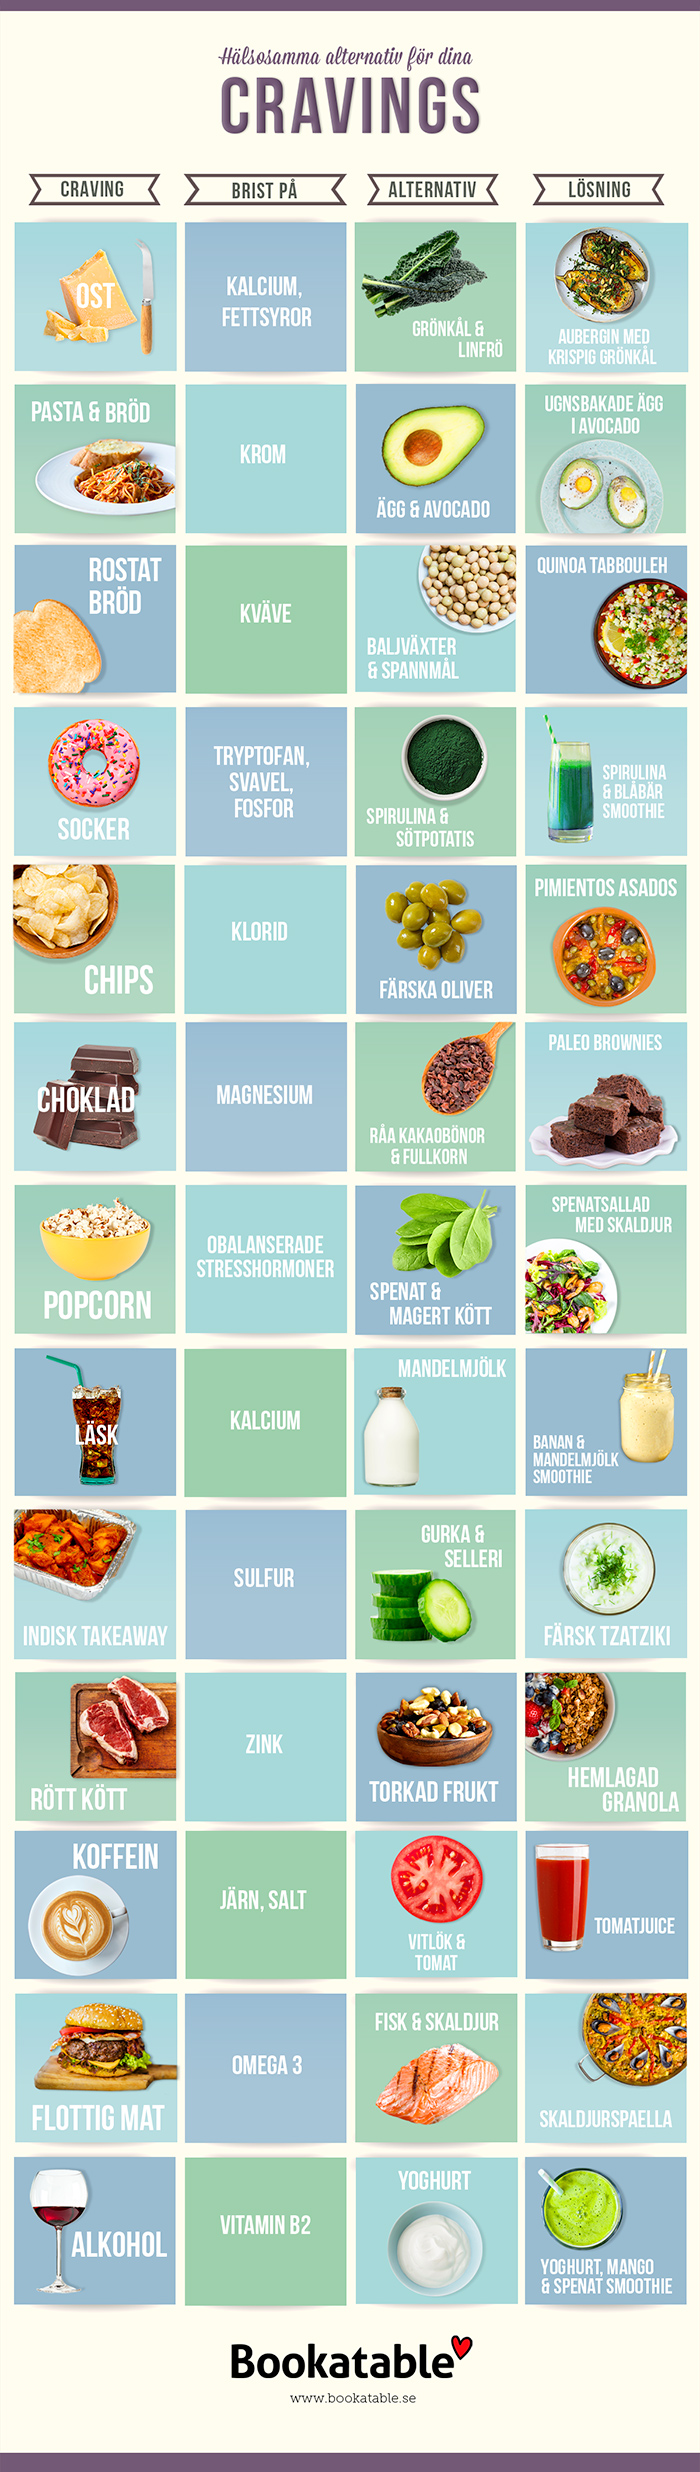 Bra tabell för att byta ut dina cravings mot hälsosamma alternativ!